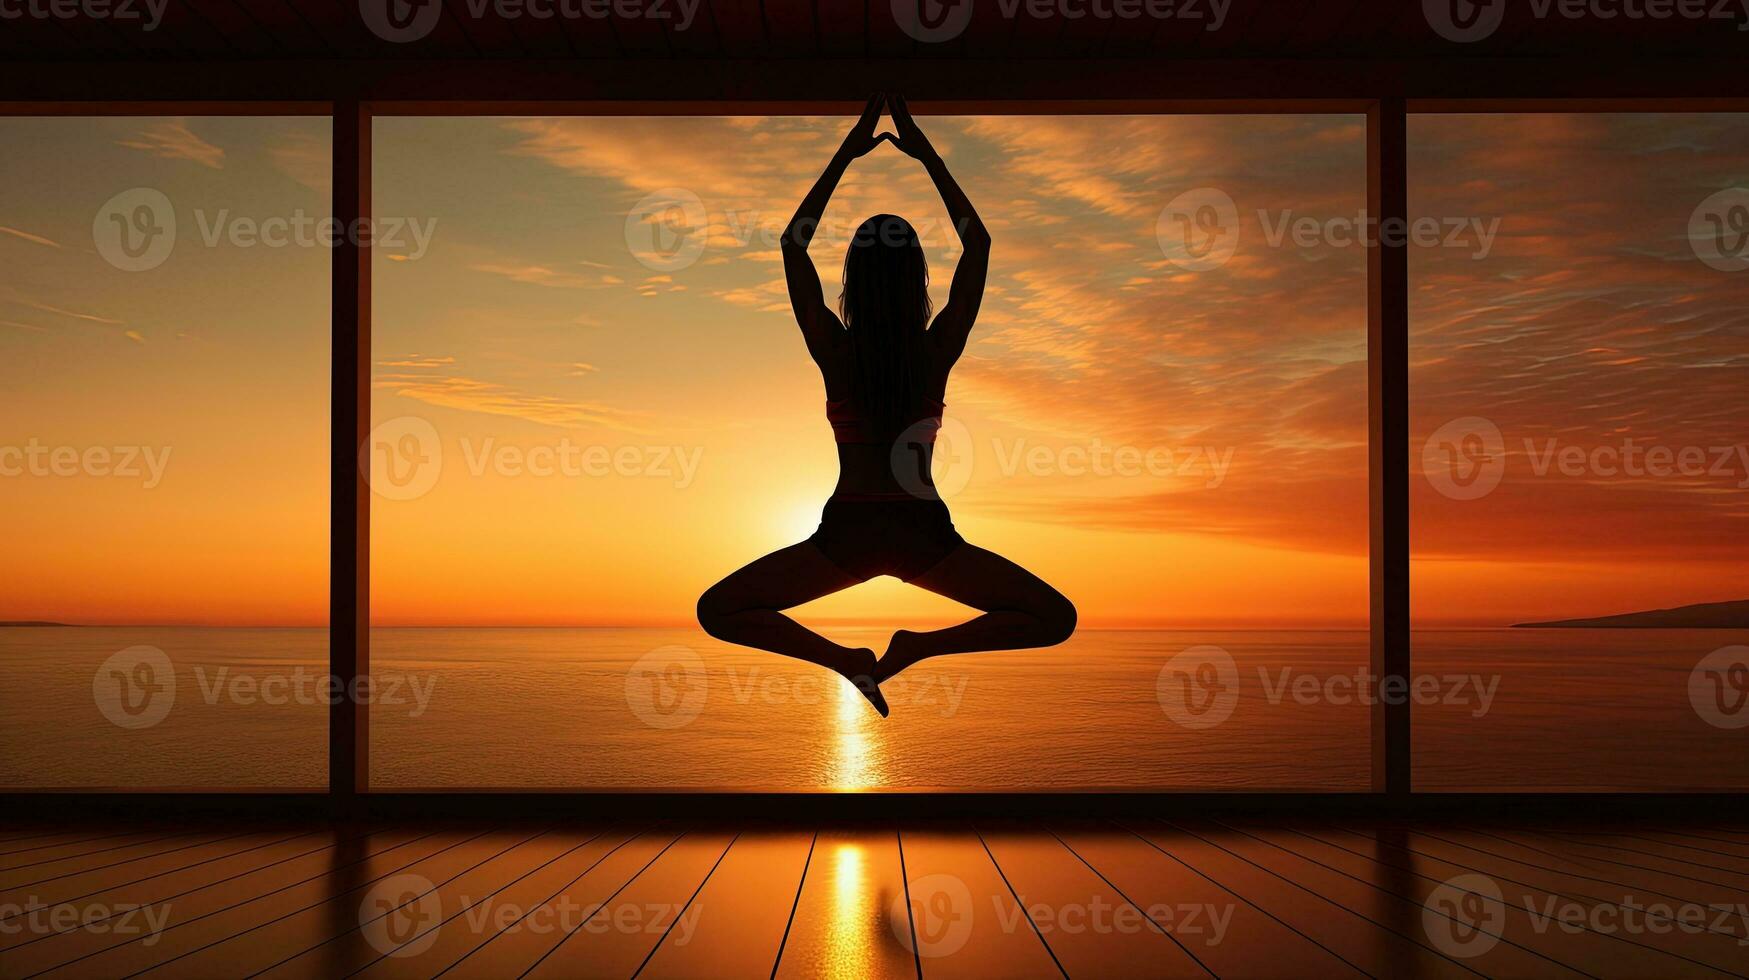 Morgen Silhouette von ein atemberaubend Yoga Dame foto